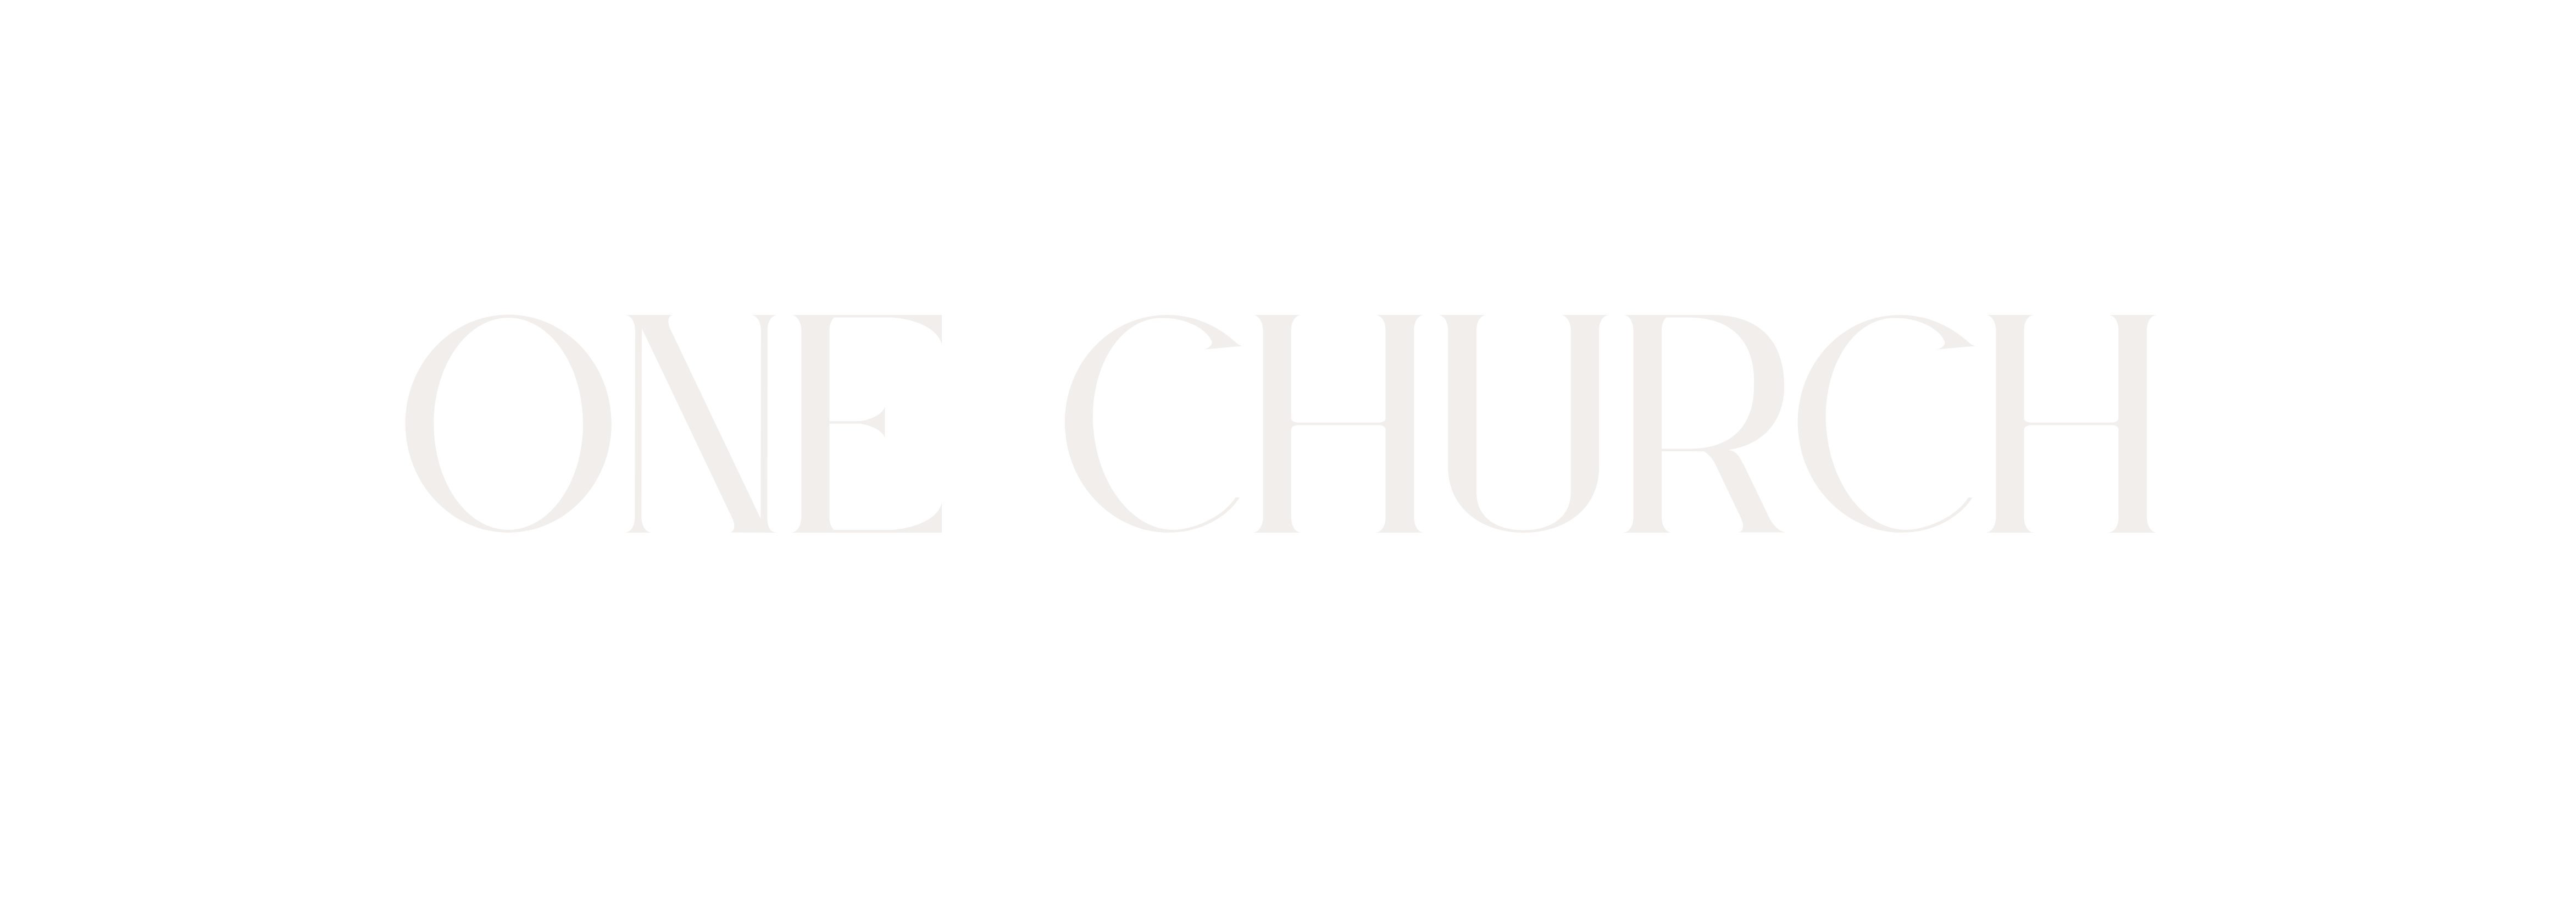 One Church (Series)